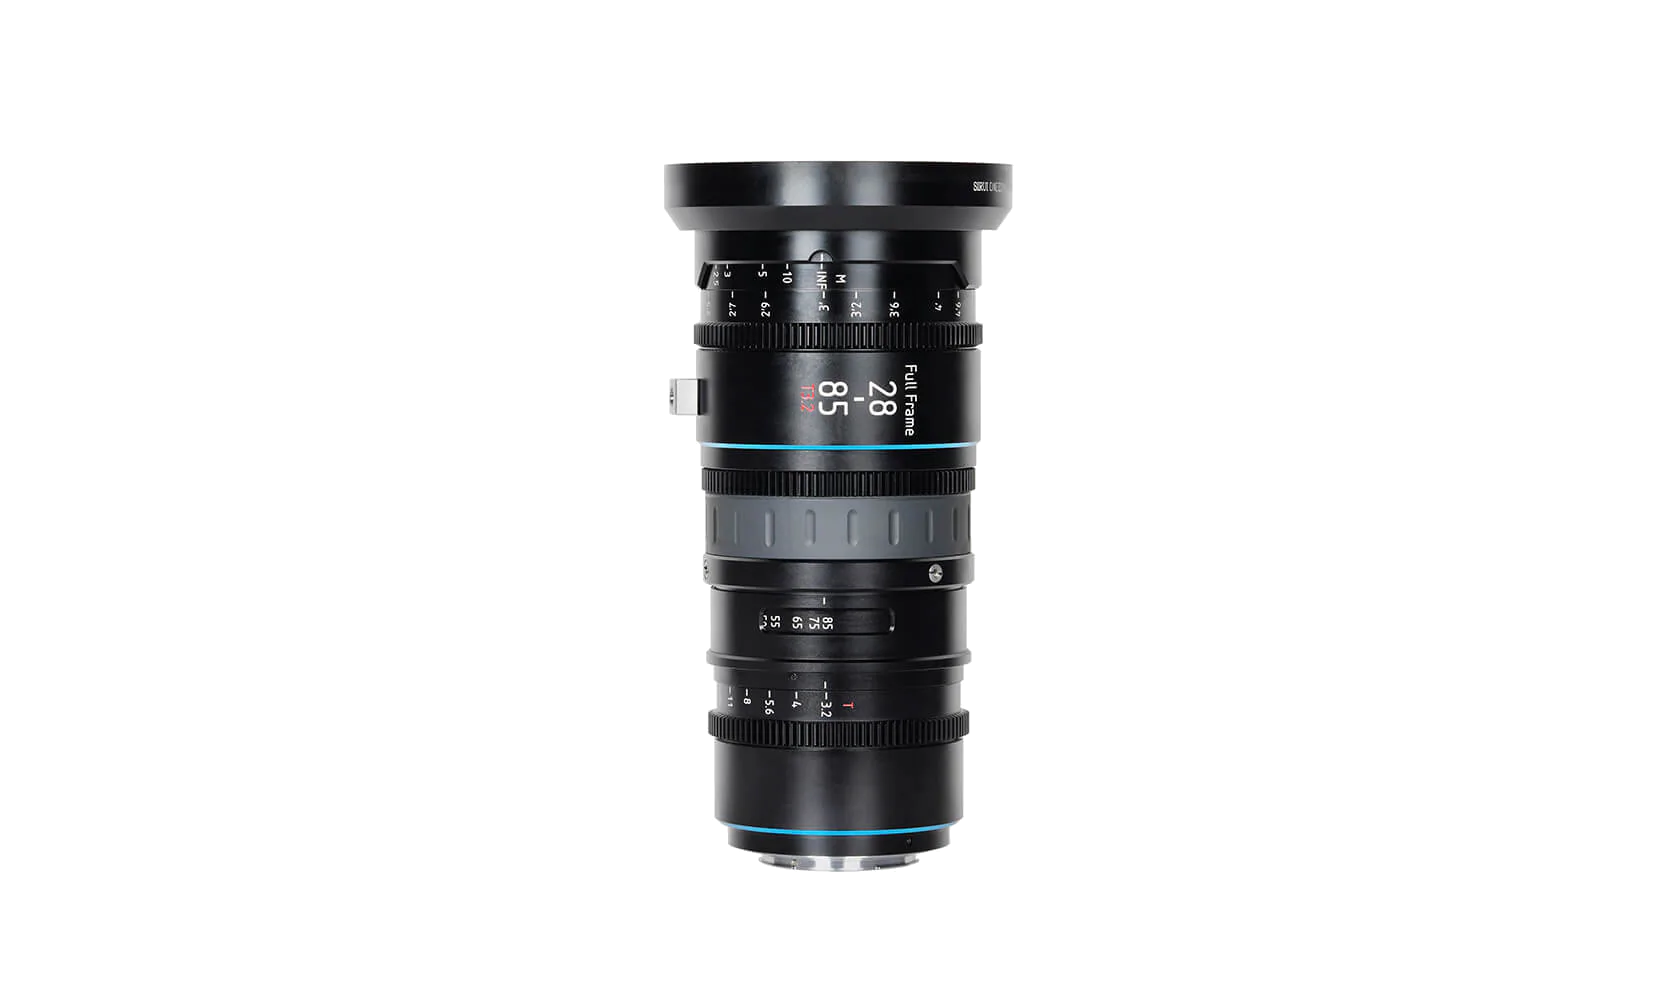 Sirui Jupiter Full-frame Macro Cine Zoom Lens 28-85mm PL mount